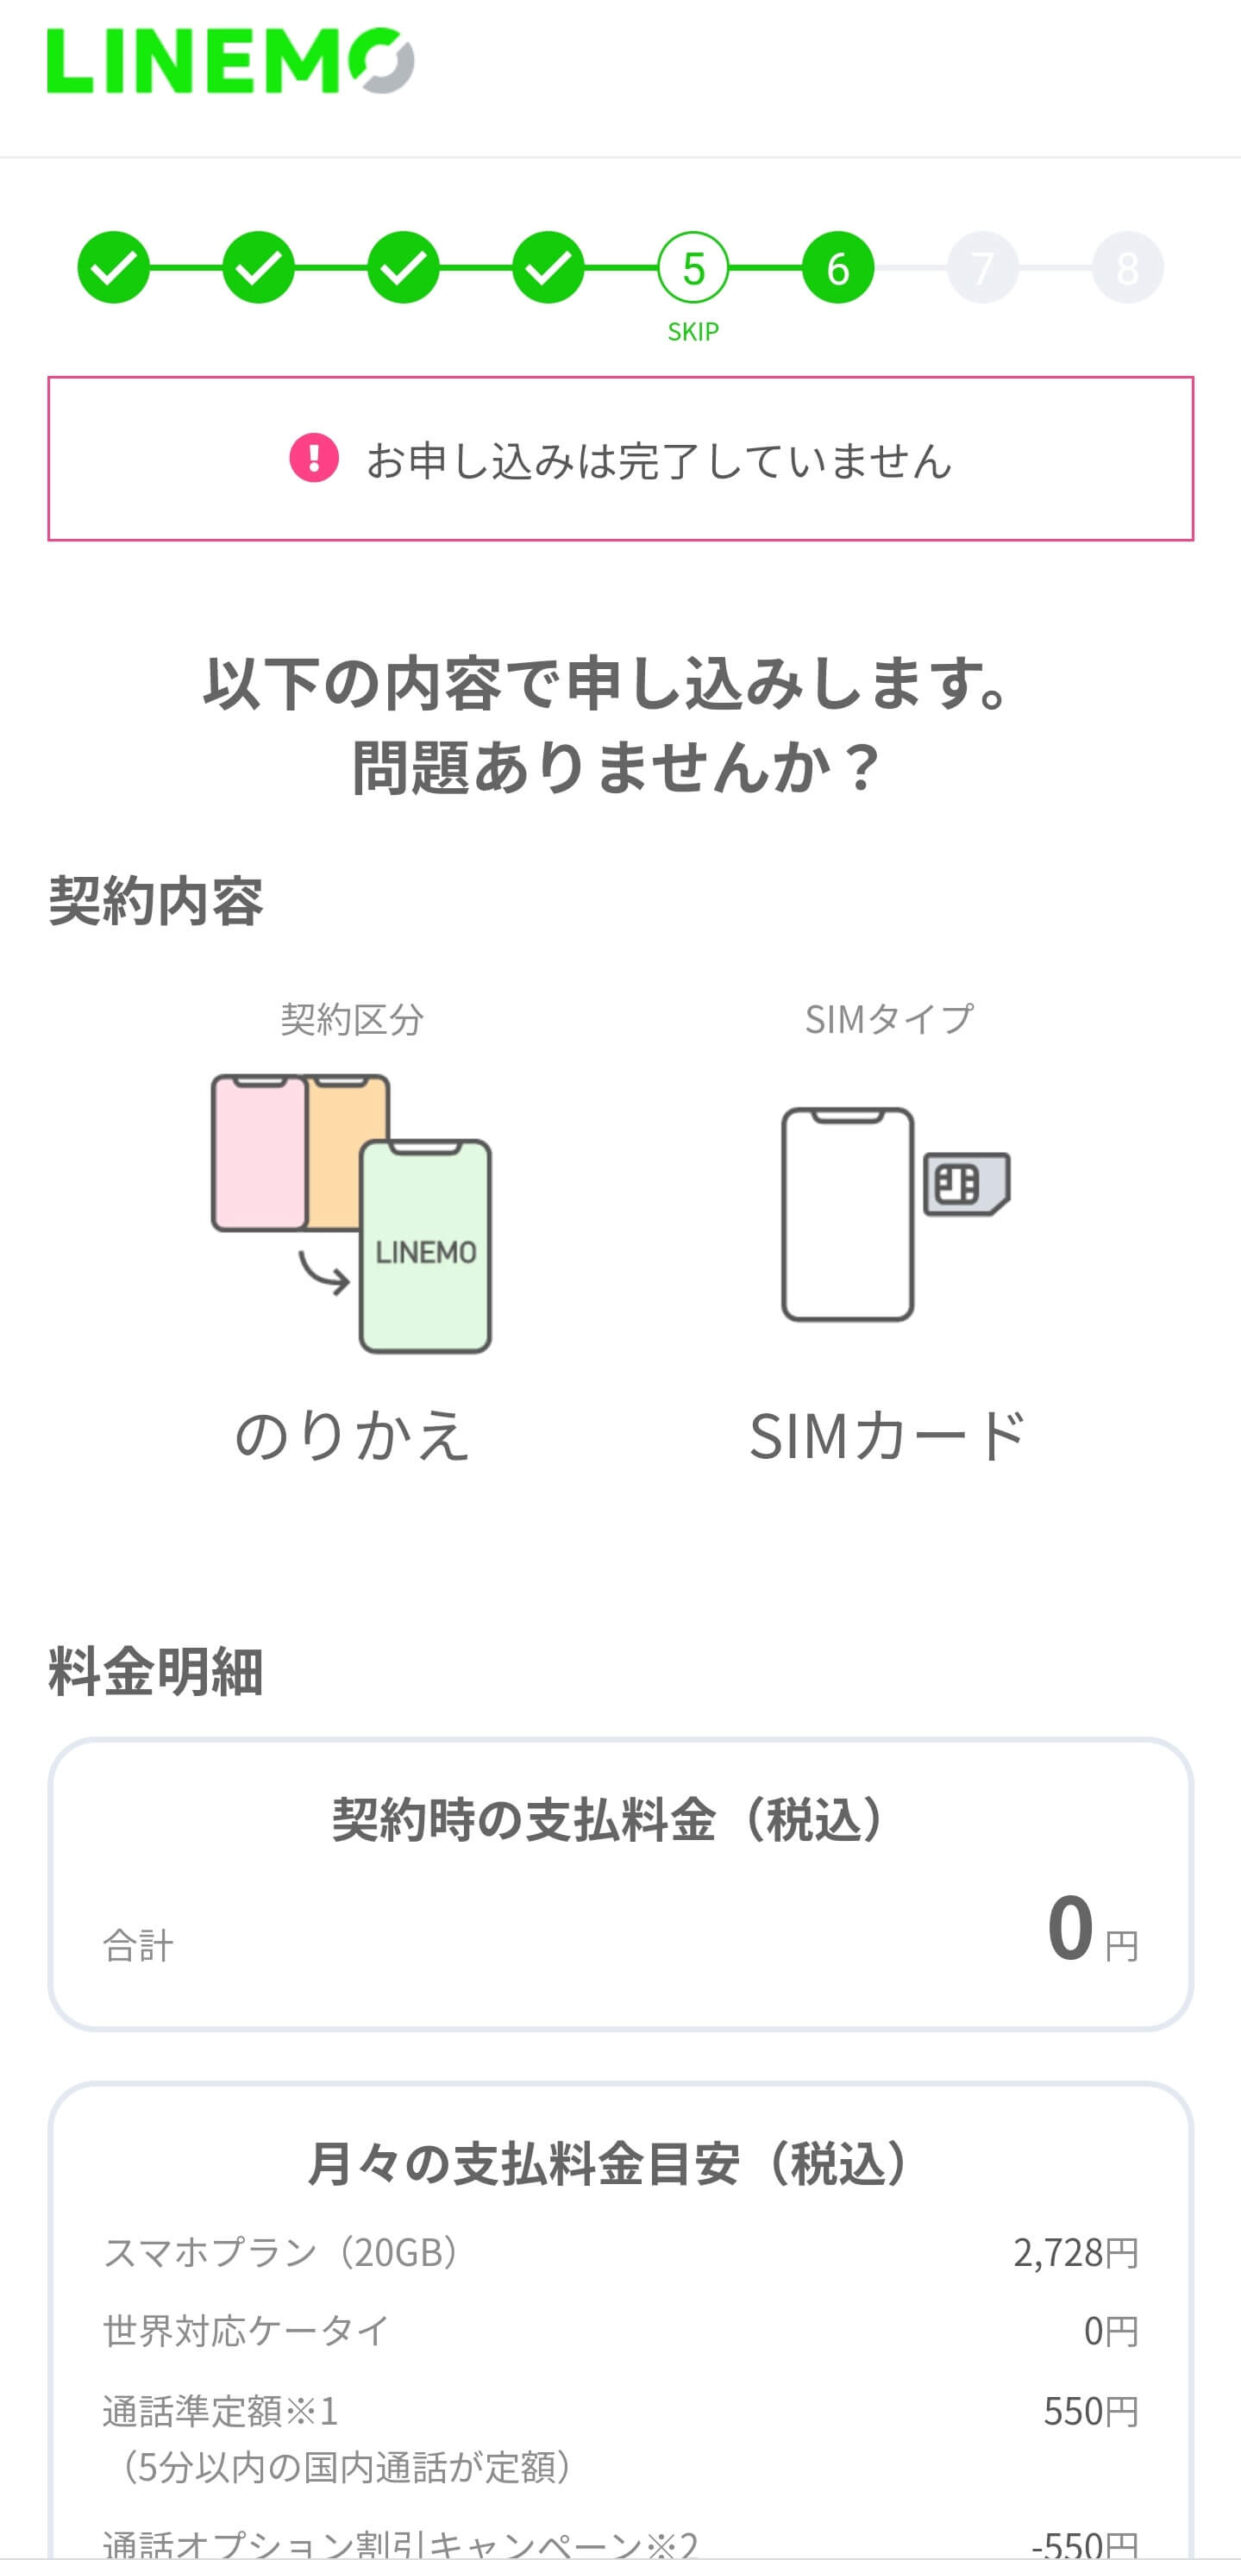 【保存版】ドコモからLINEMOに乗り換え（MNP）するやり方手順 linemo-application-21-scaled-1